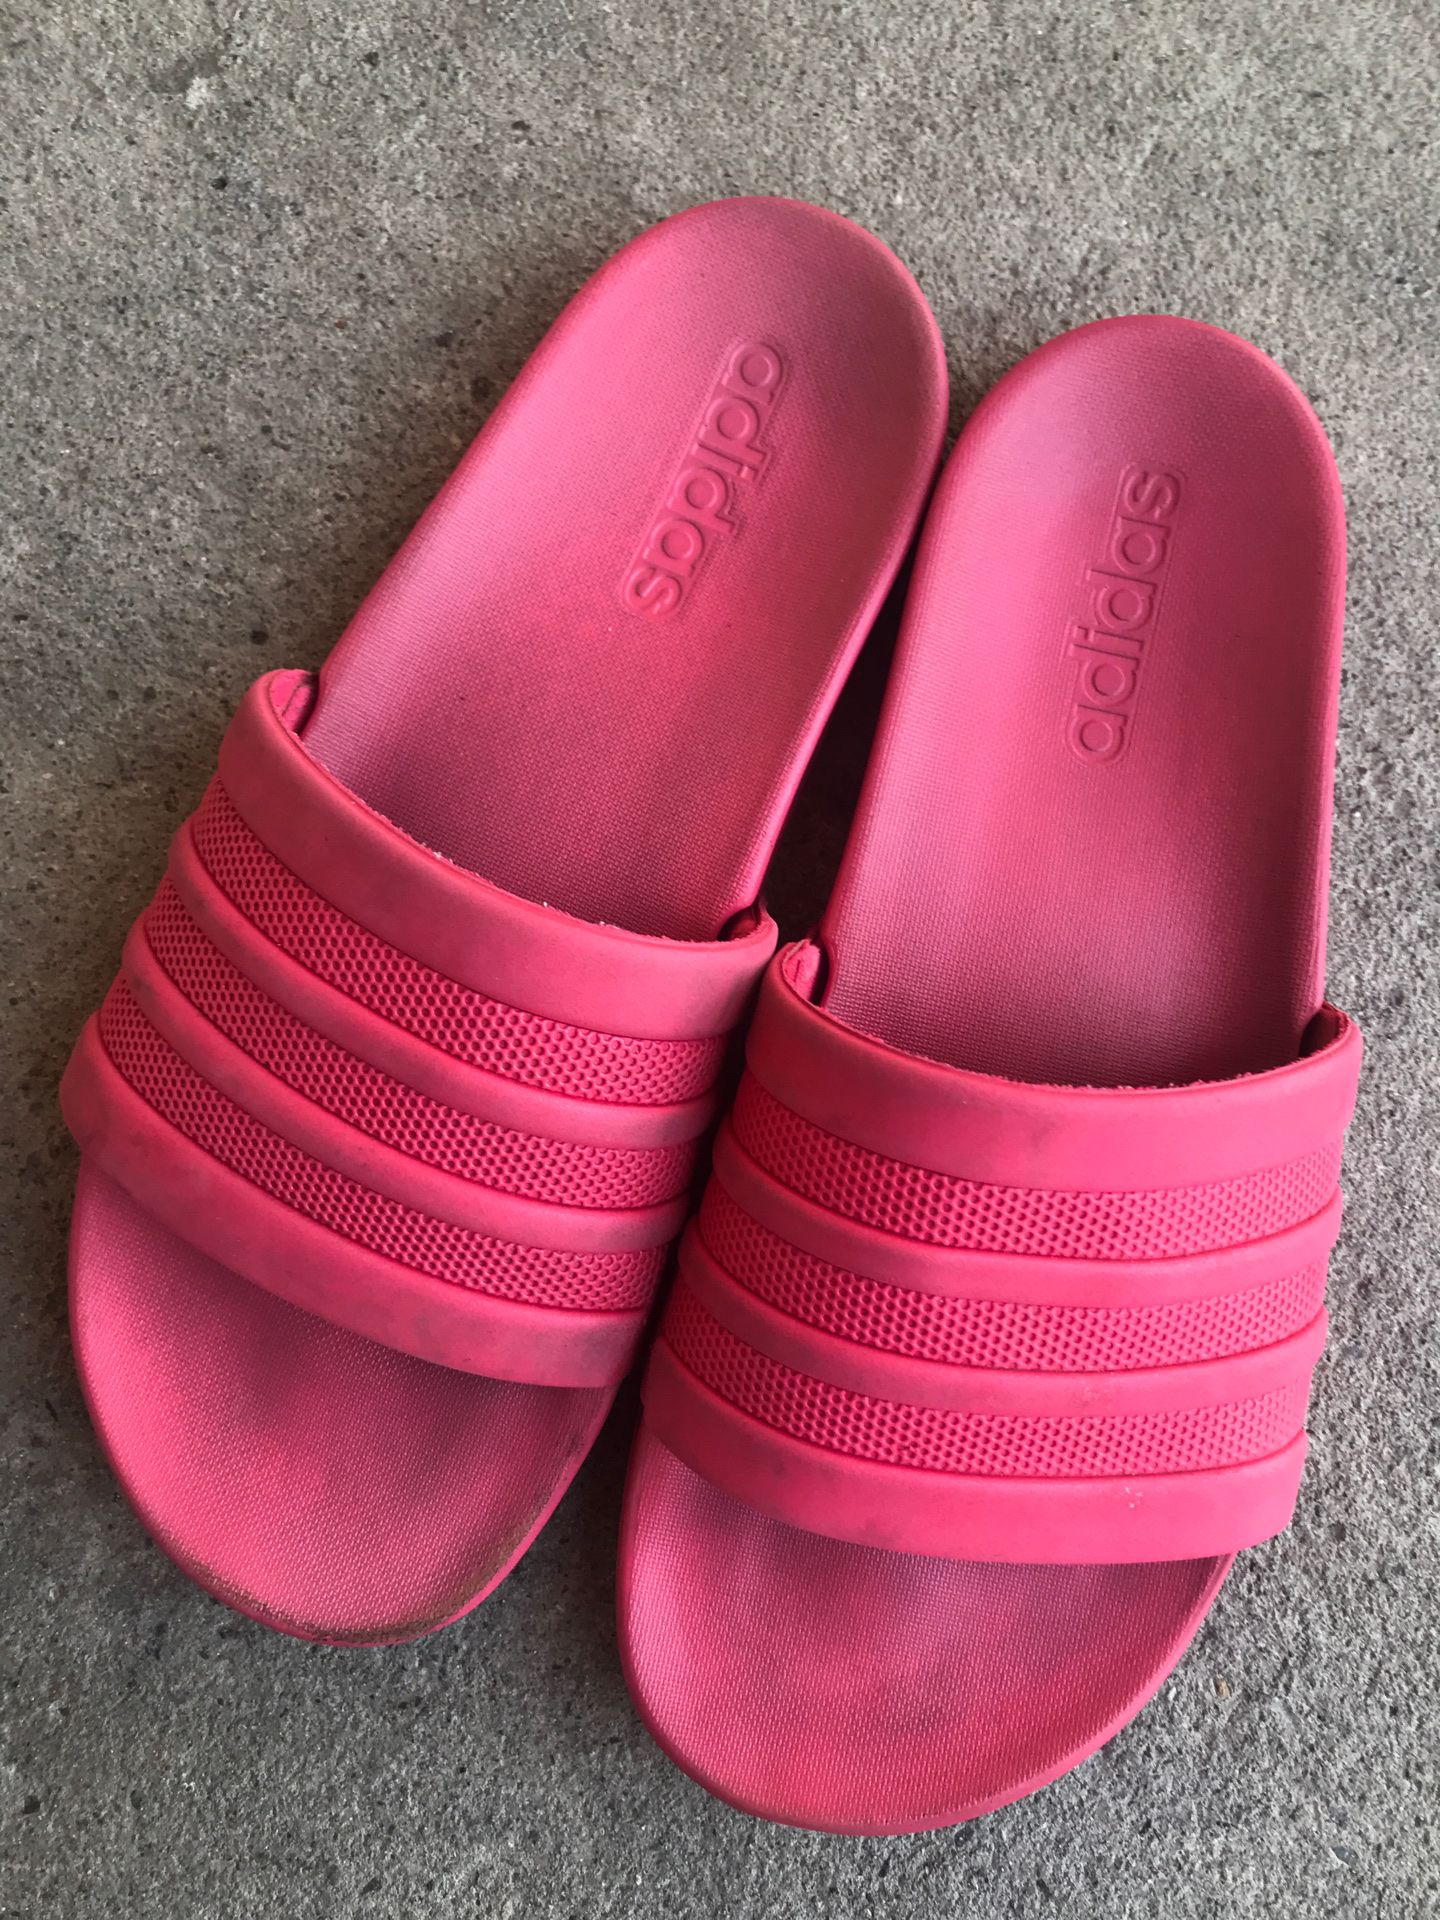 Hot Pink Adidas Slides